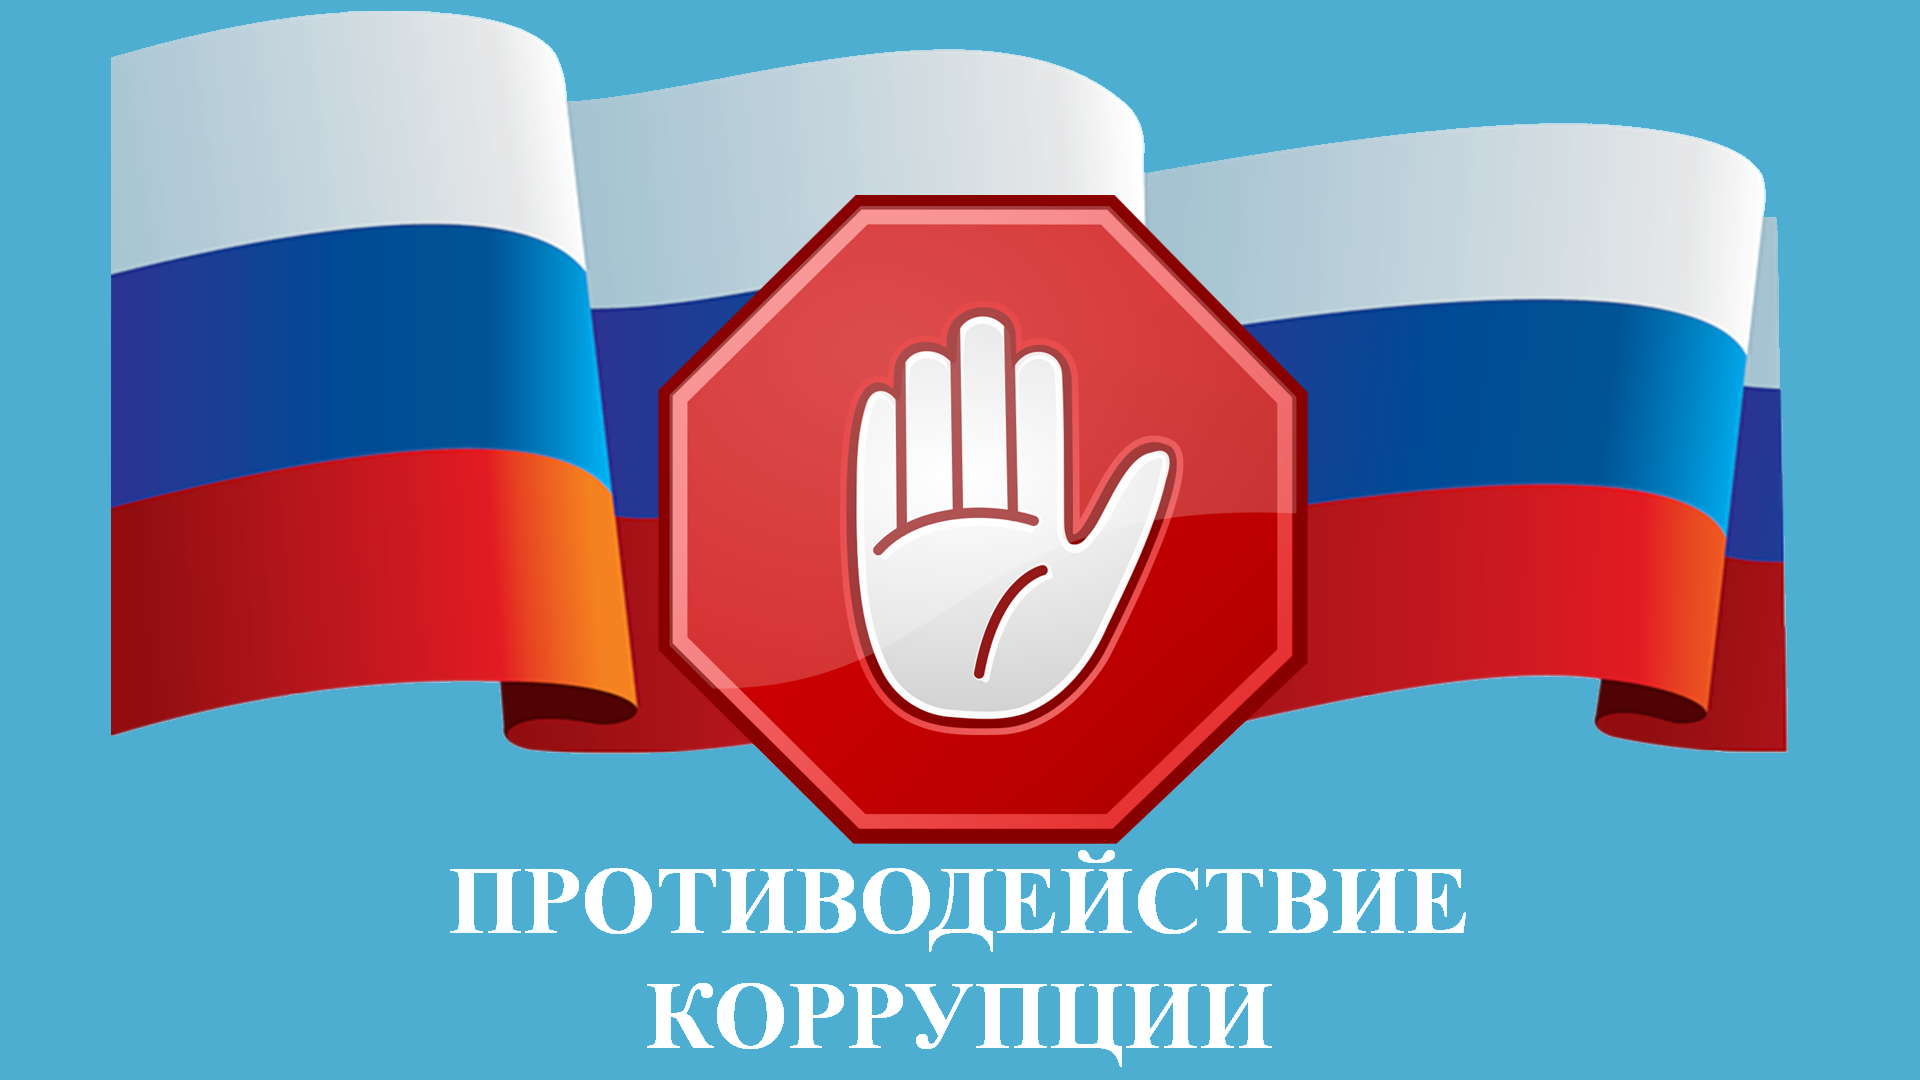 Противодействие коррупции на территории Михайловского муниципального района.